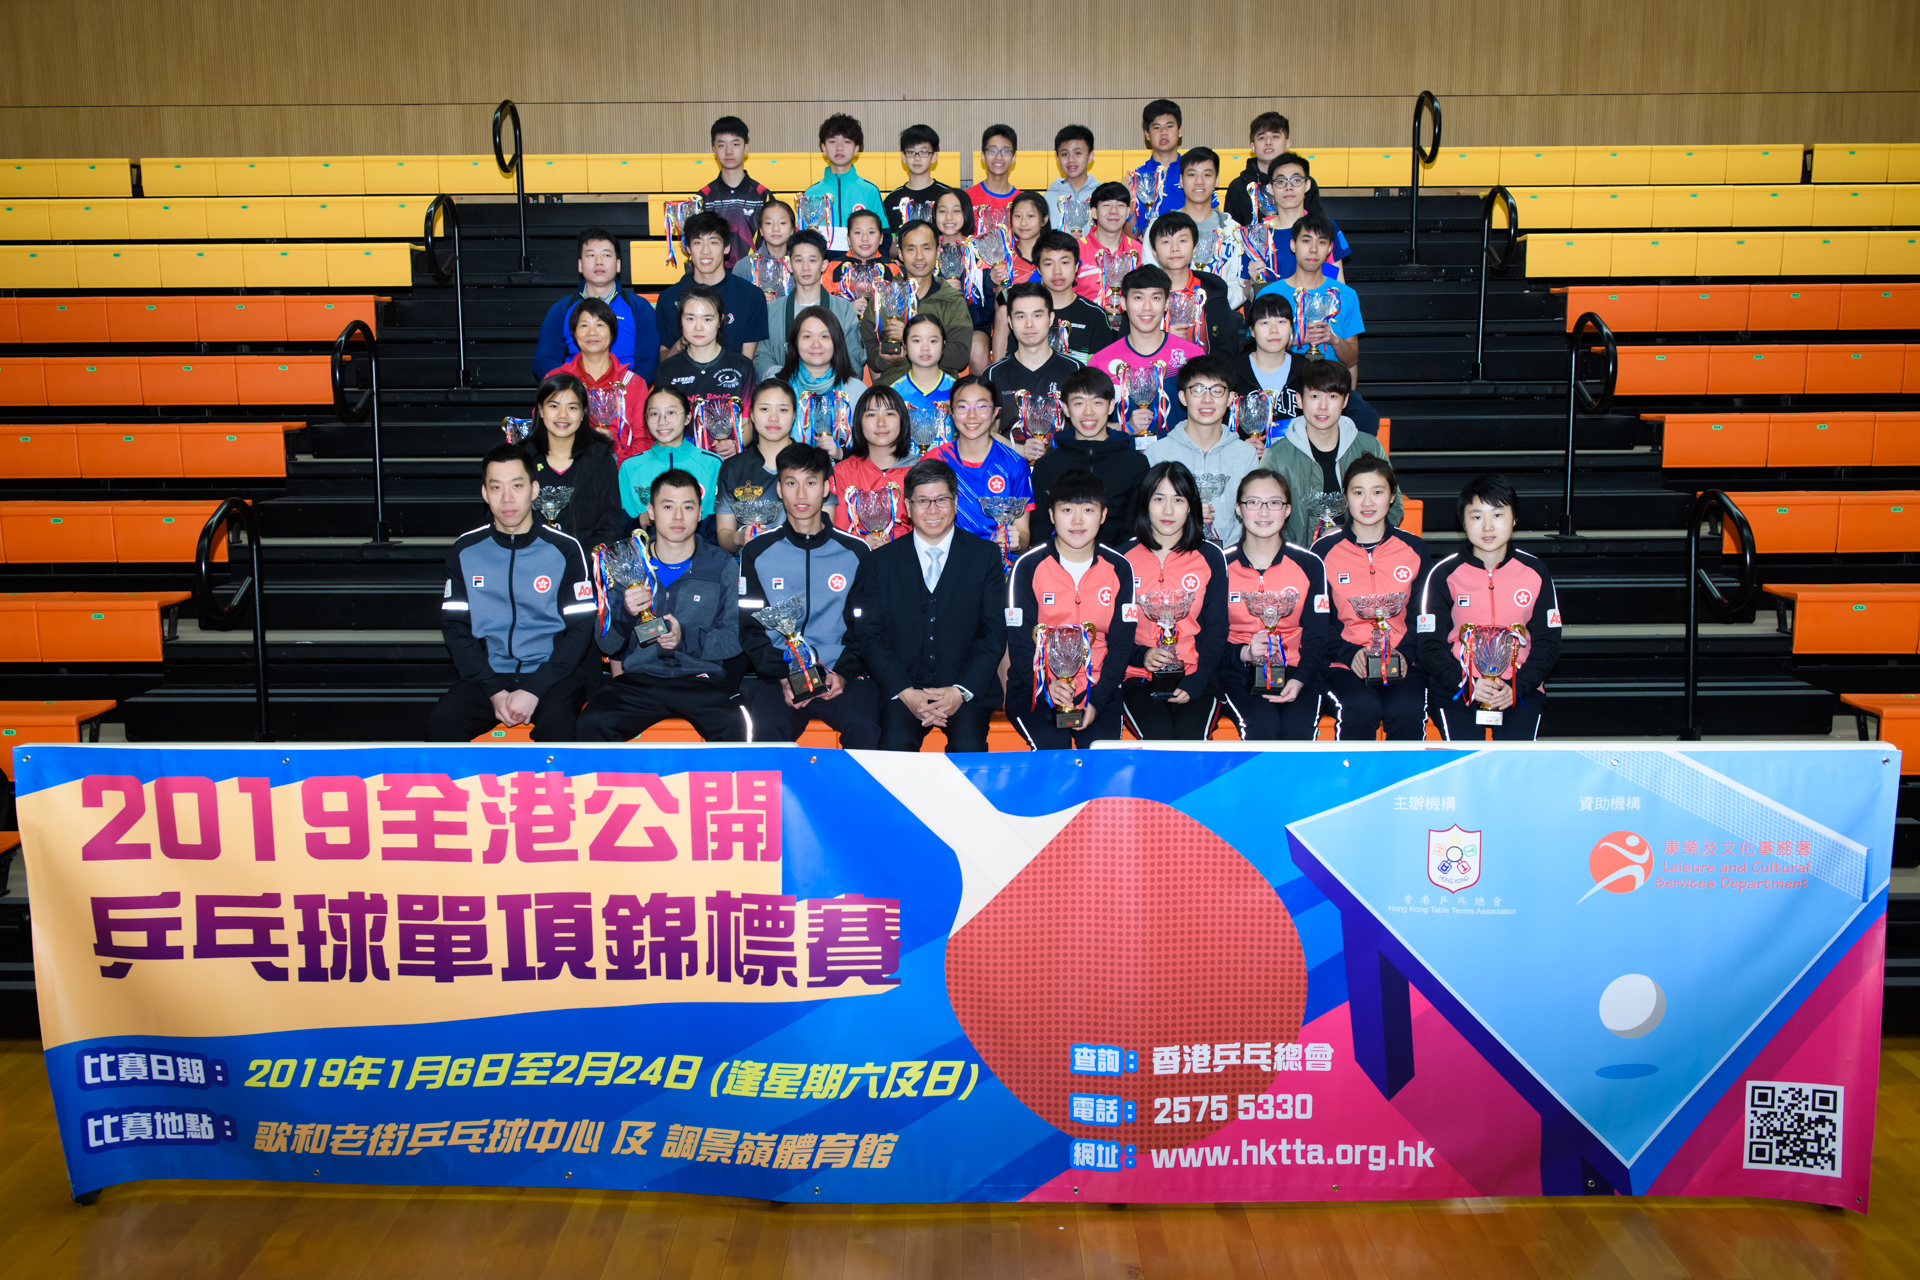 2019 全港公開乒乓球單項錦標賽 - 決賽日